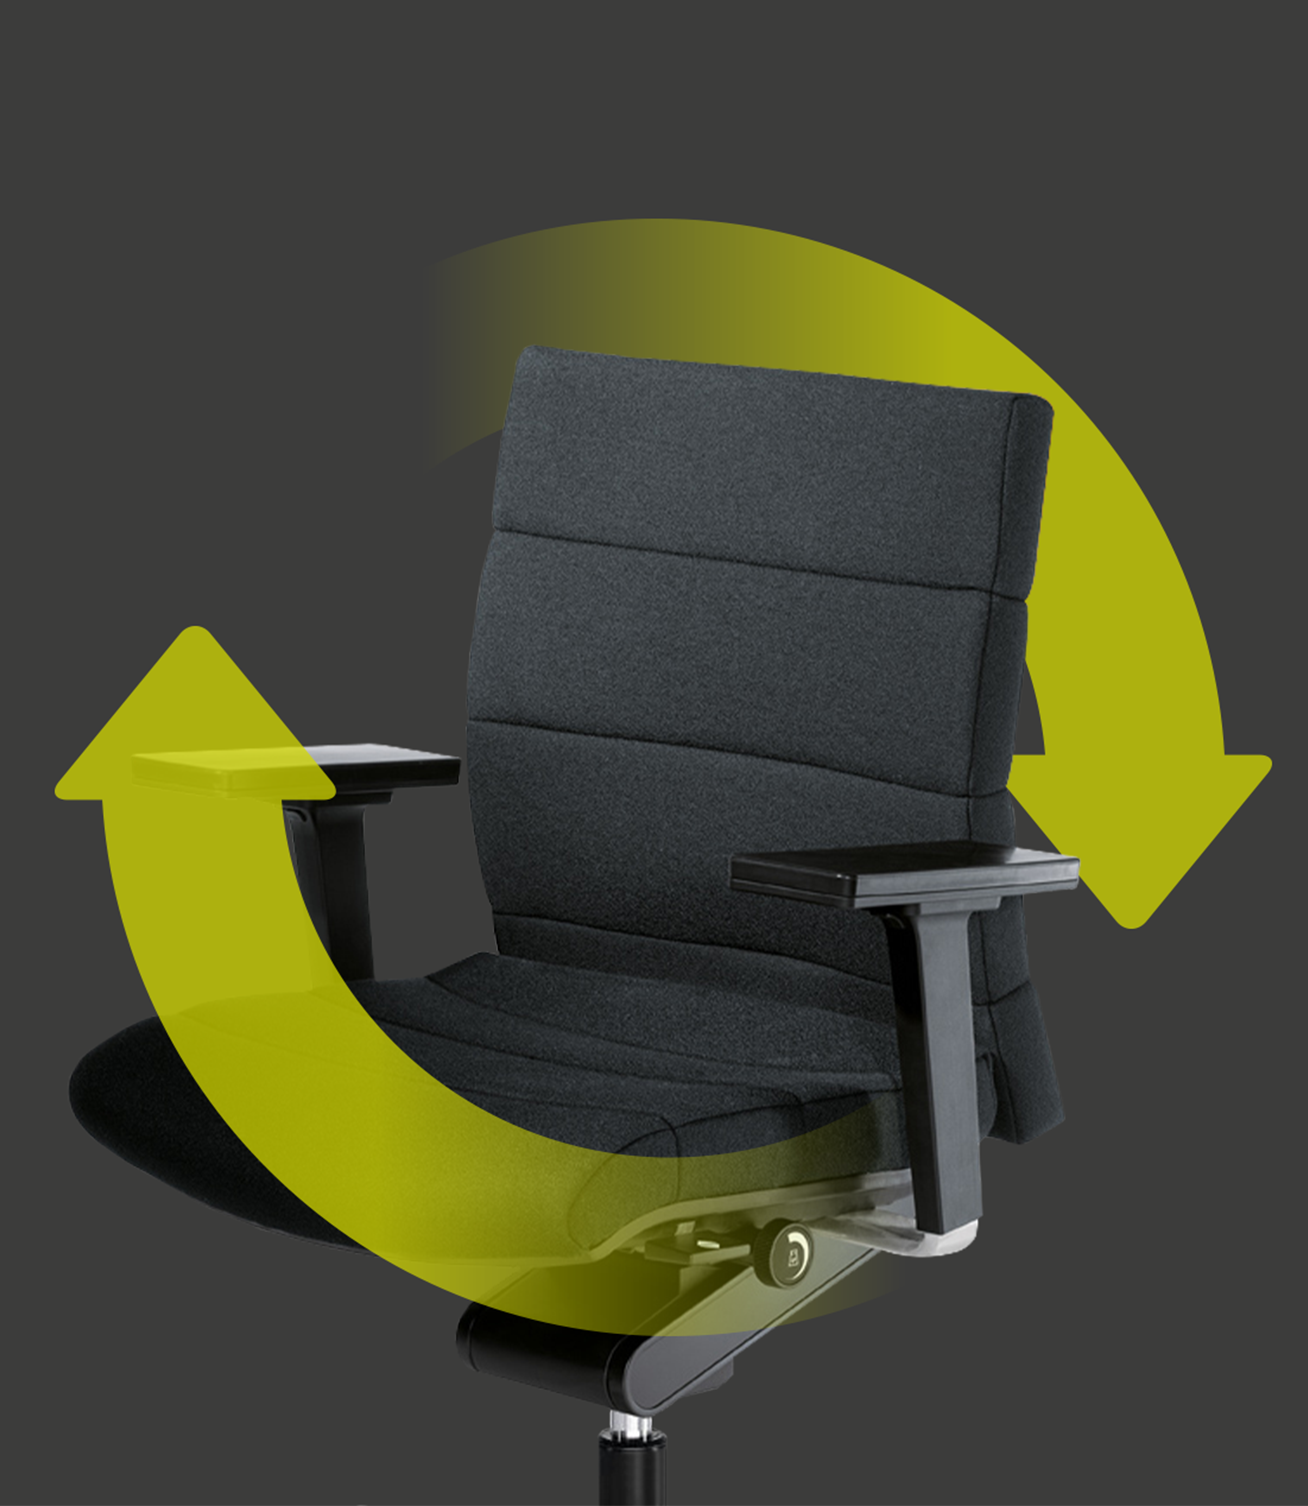 Eleganter Bürostuhl CHAMP mit Sitz- und Rückenbezug in Grau mit zwei grünen Pfeilen, die um den Stuhl herum einen Kreis bilden. Diese weisen auf die Nachhaltigkeit und Wiederverwendbarkeit des Stuhls hin.